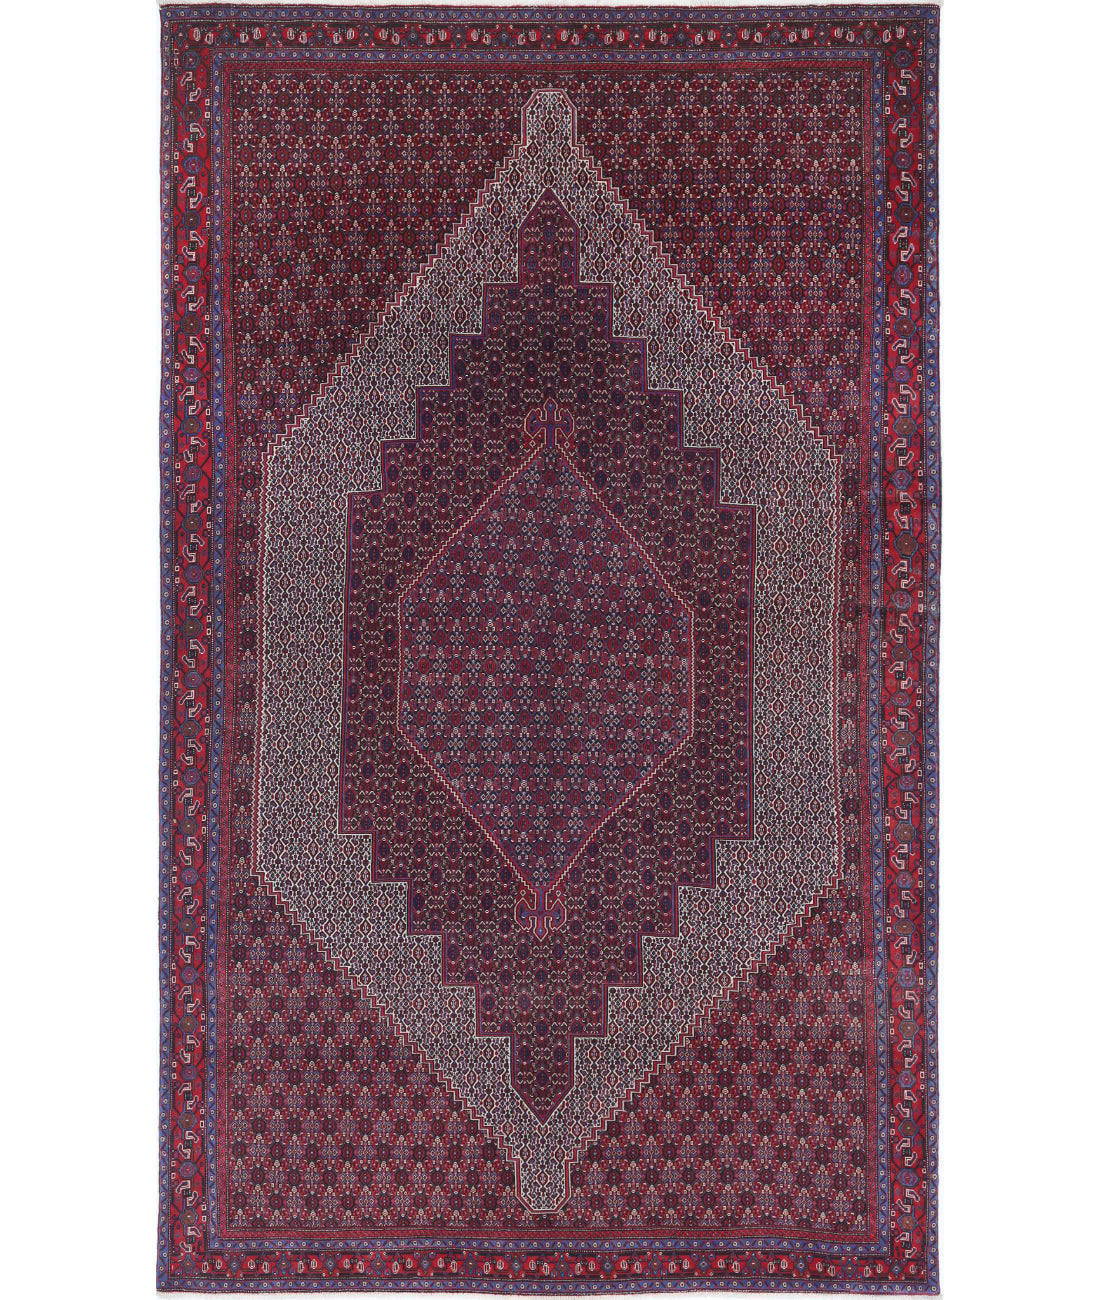 Hand Knotted Persian Bijar Wool Rug - 6&#39;8&#39;&#39; x 10&#39;11&#39;&#39; 6&#39;8&#39;&#39; x 10&#39;11&#39;&#39; (200 X 328) / Blue / Red